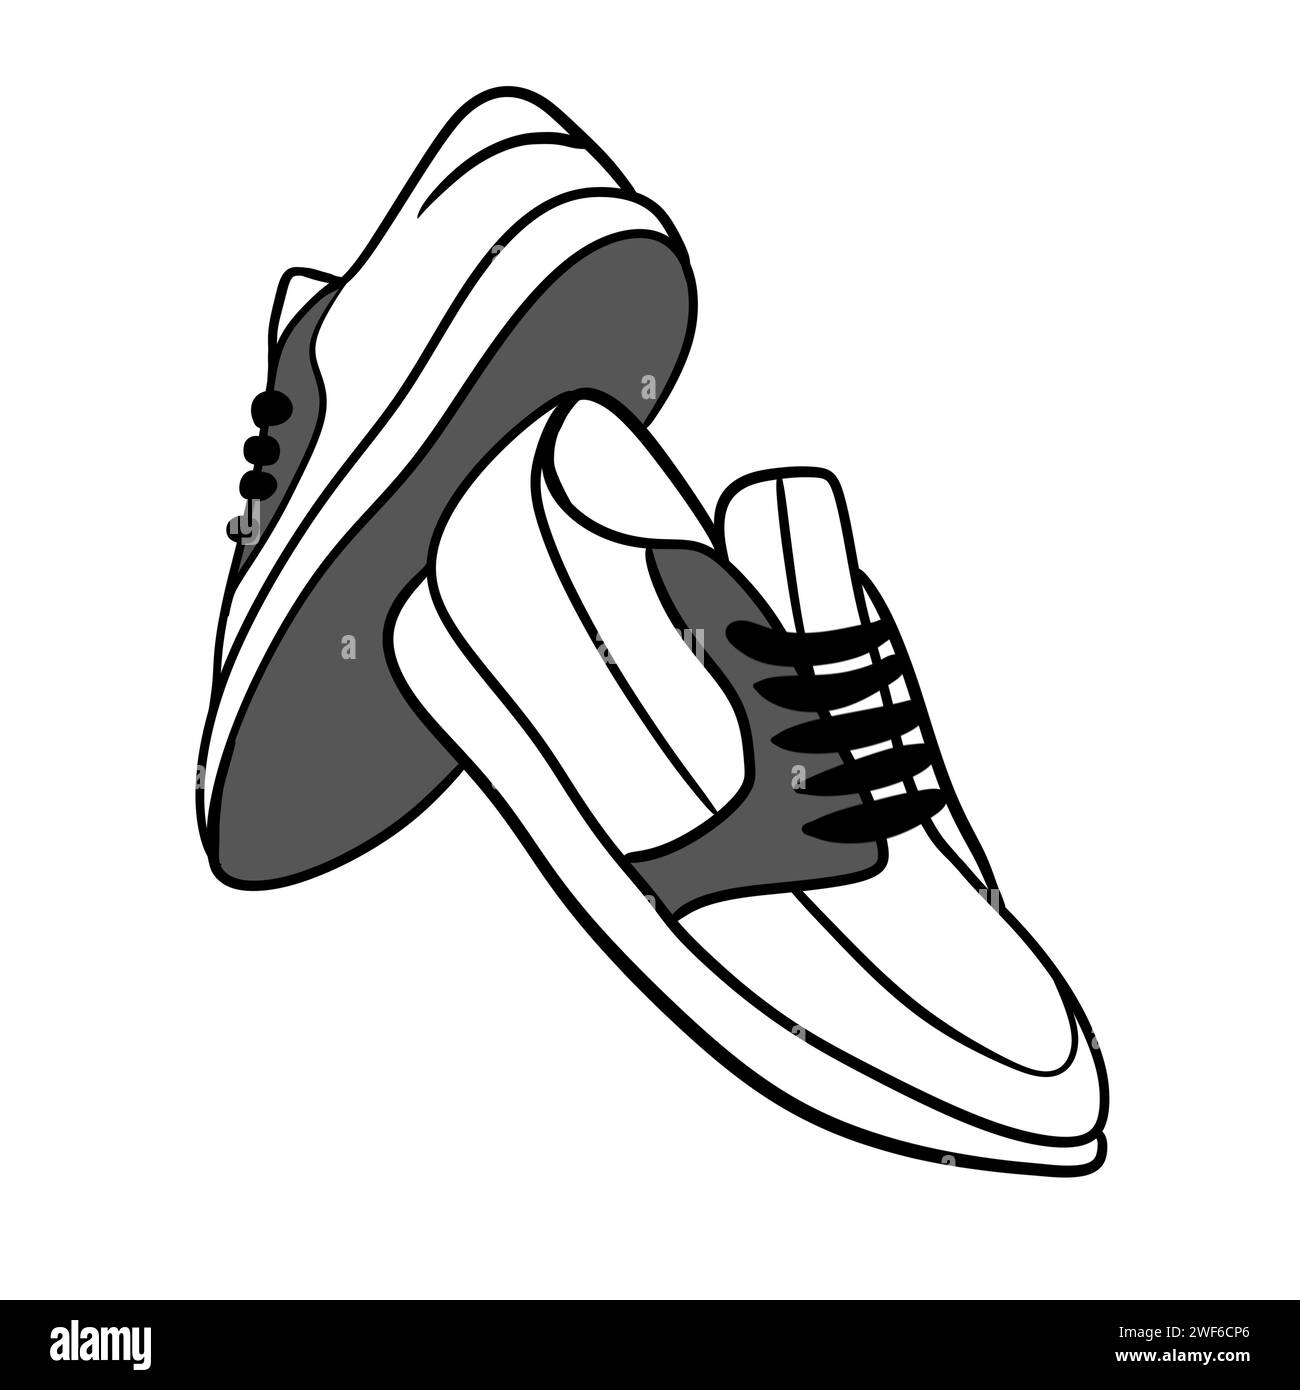 Handgezeichnete Illustration von Sneakers Turnschuhen Laufschuhe in Schwarz-weiß. Moderne monochrome Zeichnung von Sportbekleidung Schuhe trendige Walking Wear Lifestyle Mode, gesundes aktives Konzept Stockfoto